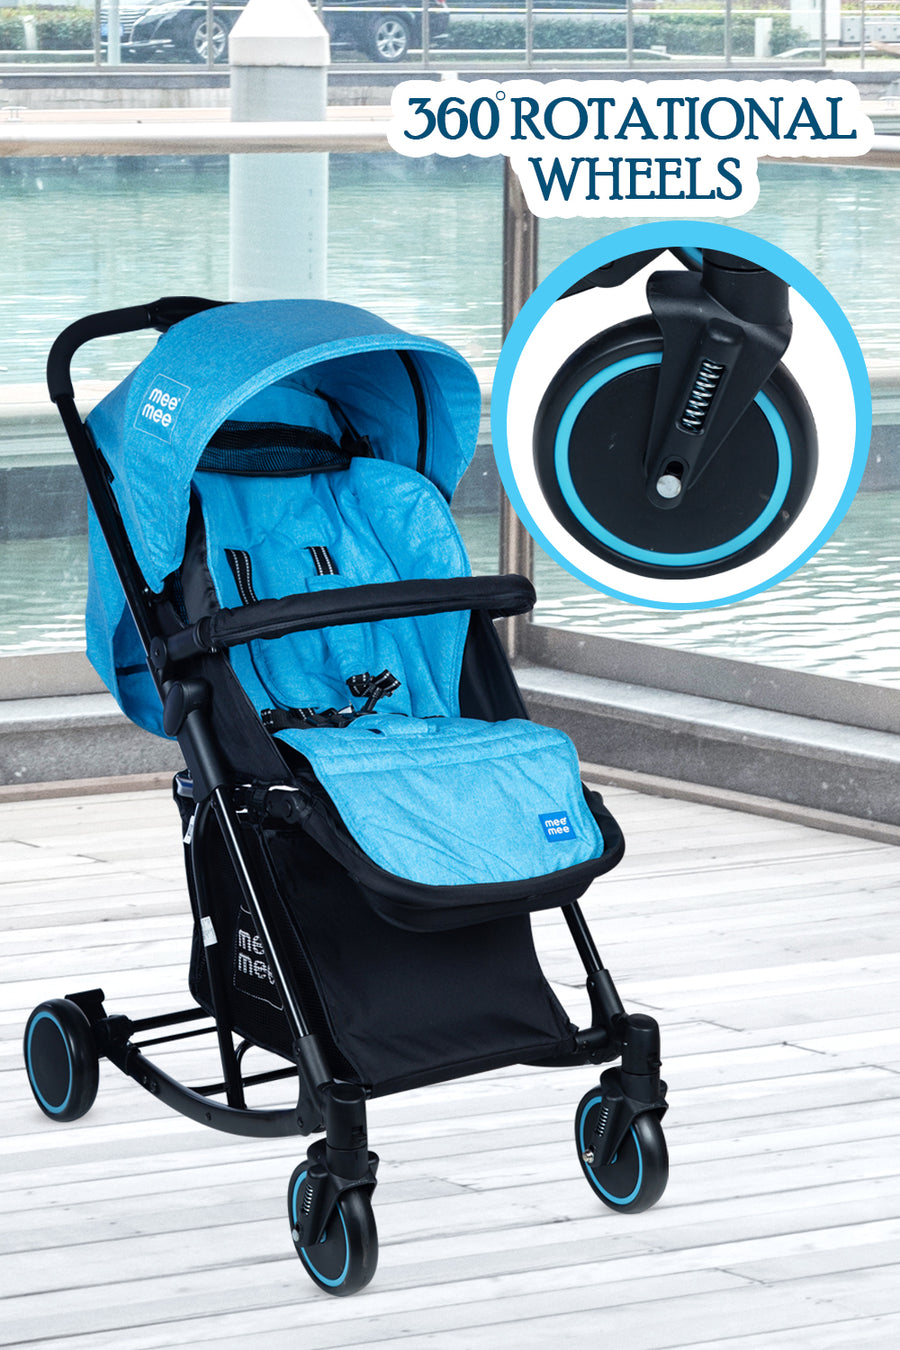 Mee Mee - Baby Pram Stroller with 360 Rotational Wheels